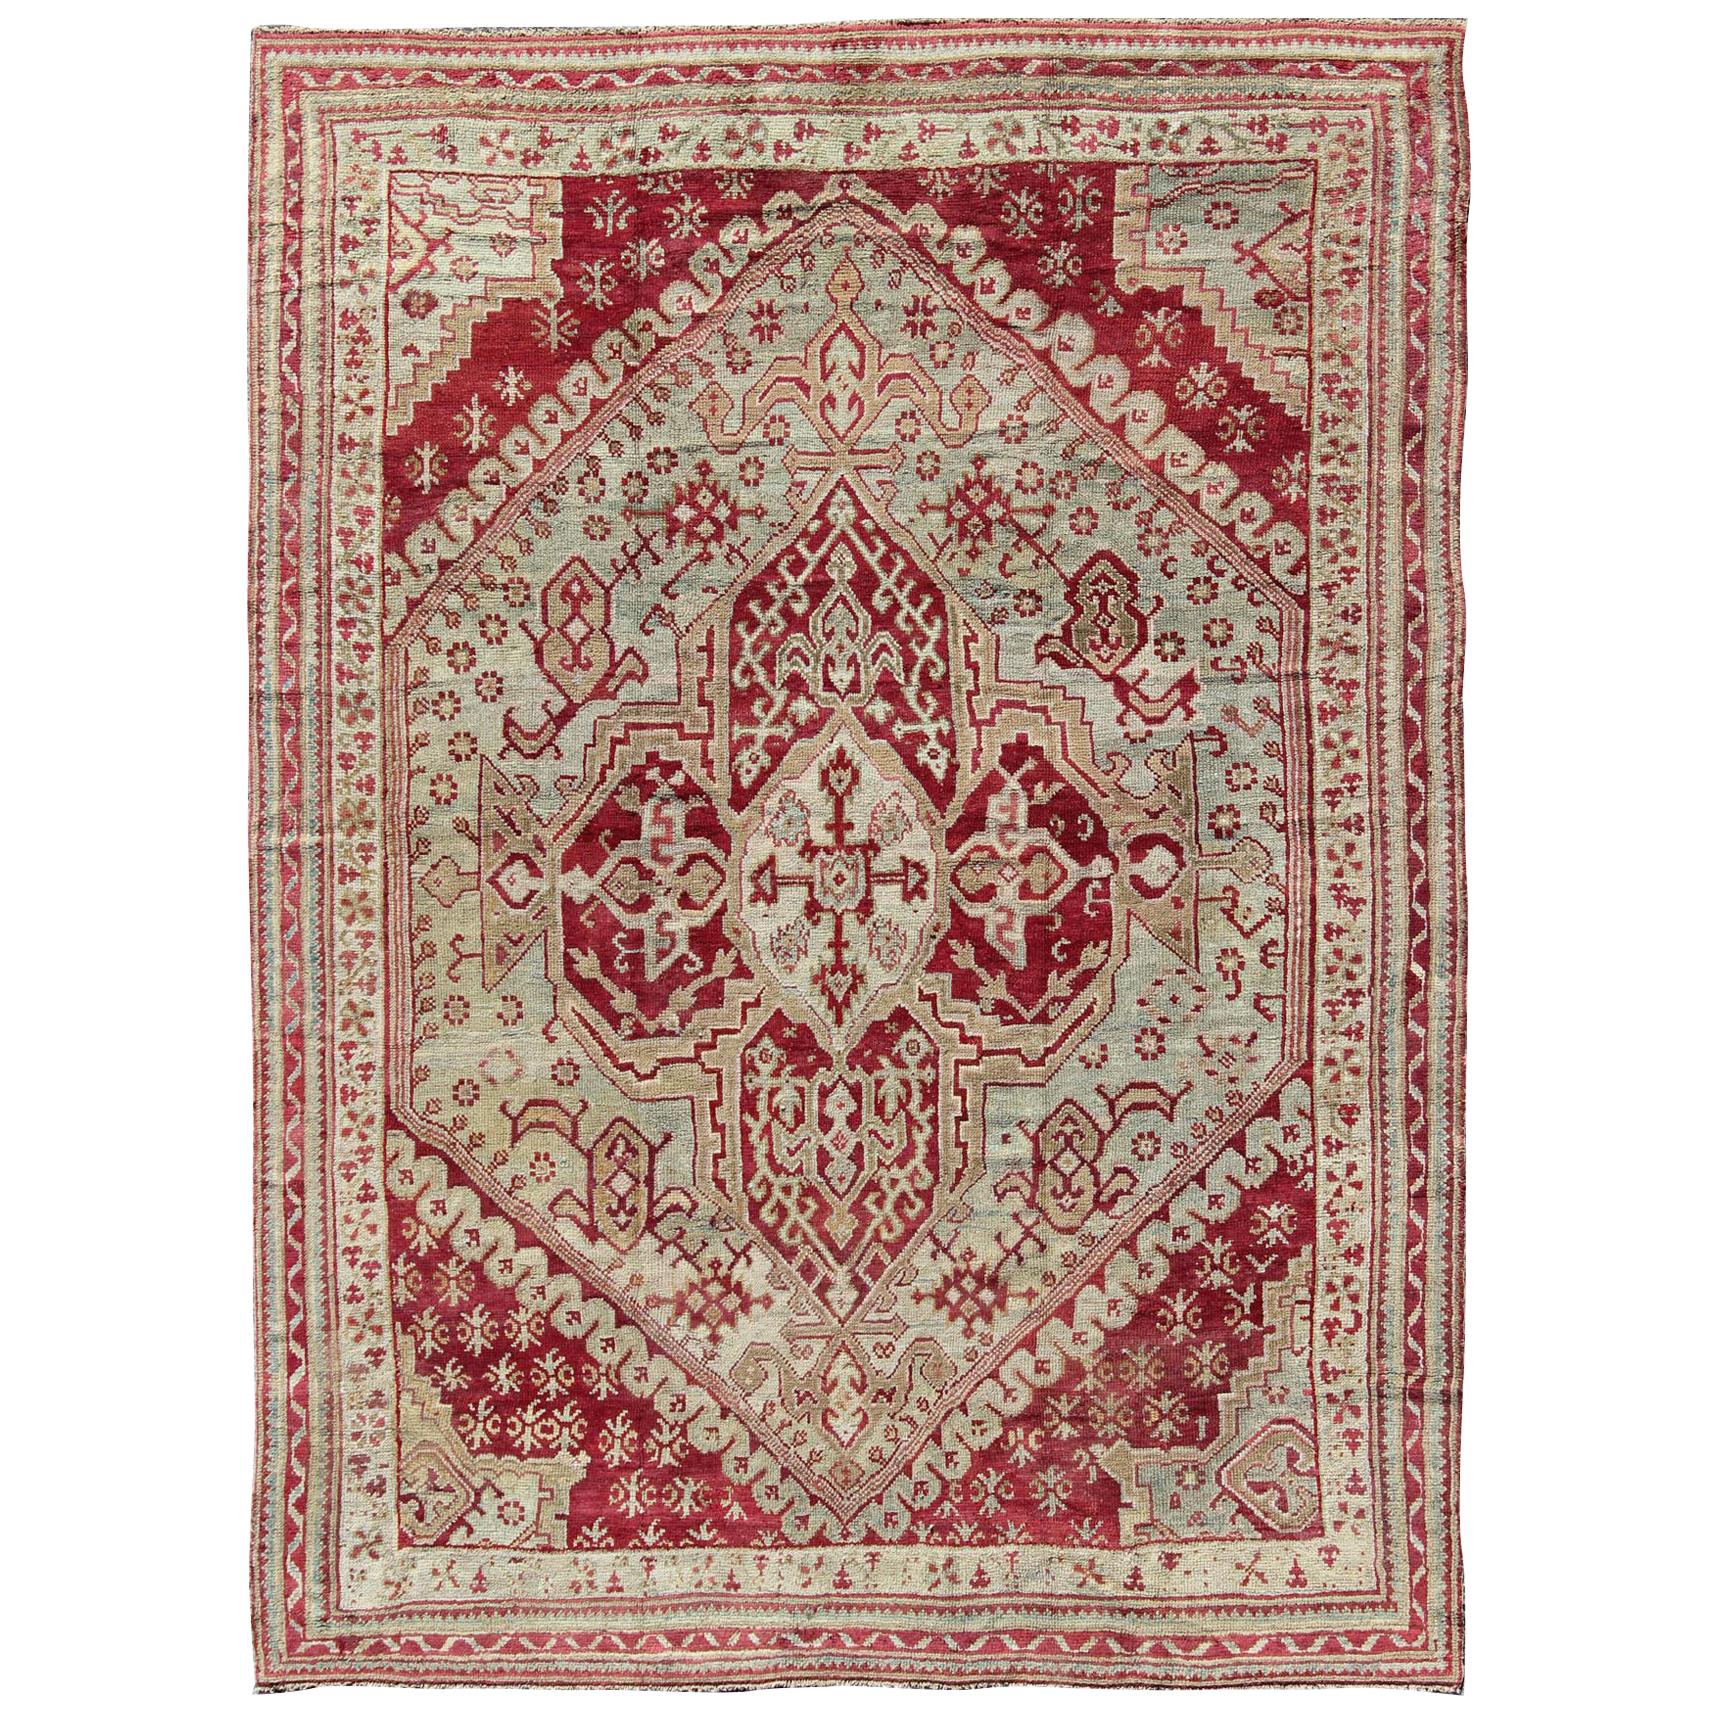 Antiker türkischer Ghiordes-Teppich aus dem 19. Jahrhundert in Himbeerrot, Eisblau und L. Green